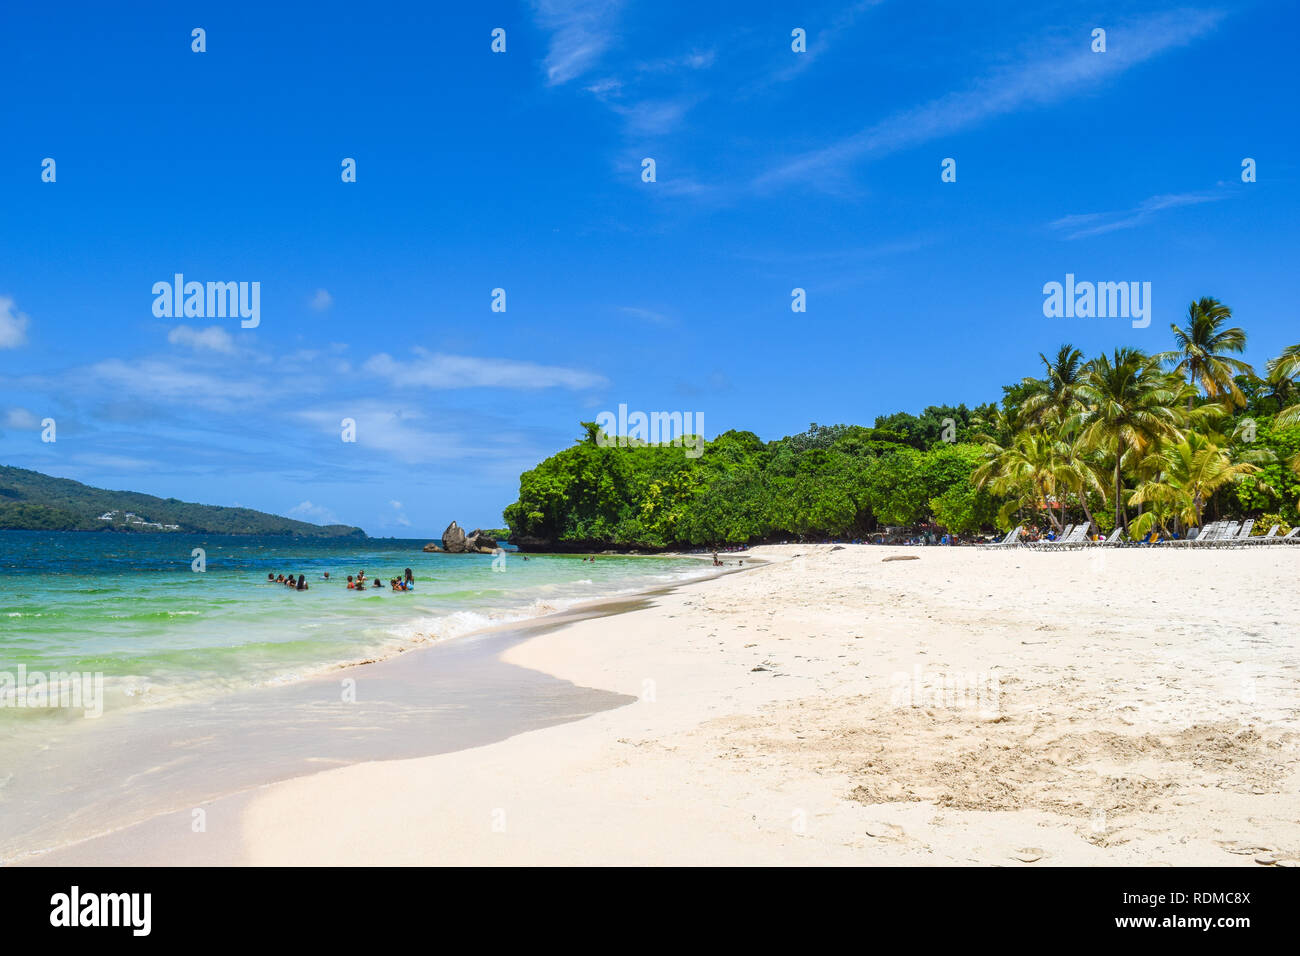 Île tropicale, plage idyllique avec certains touristes, mer des Caraïbes Banque D'Images